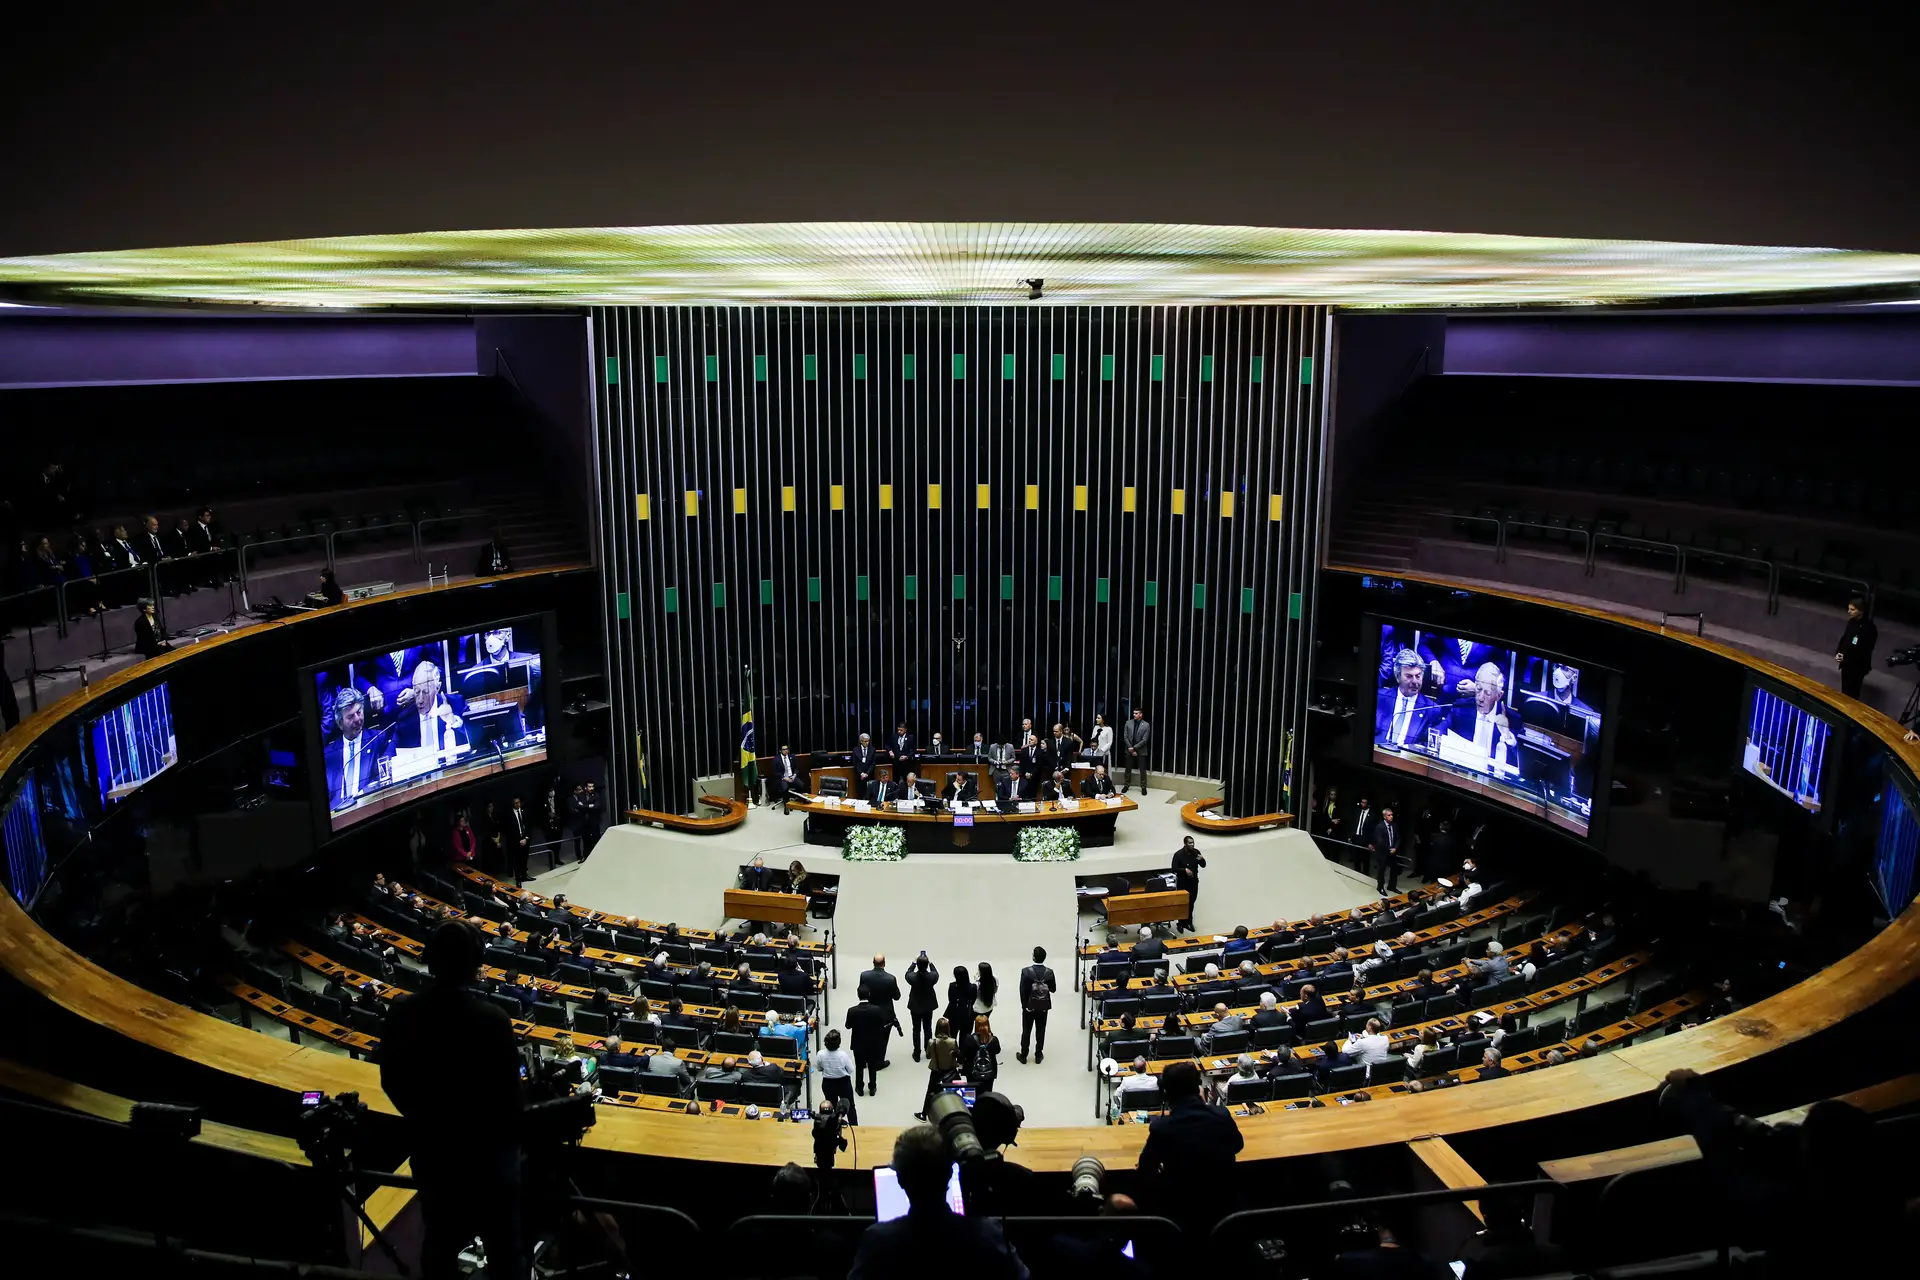 Congresso brasileiro vai ficar mais velho e conservador depois das eleições deste domingo, apontam especialistas